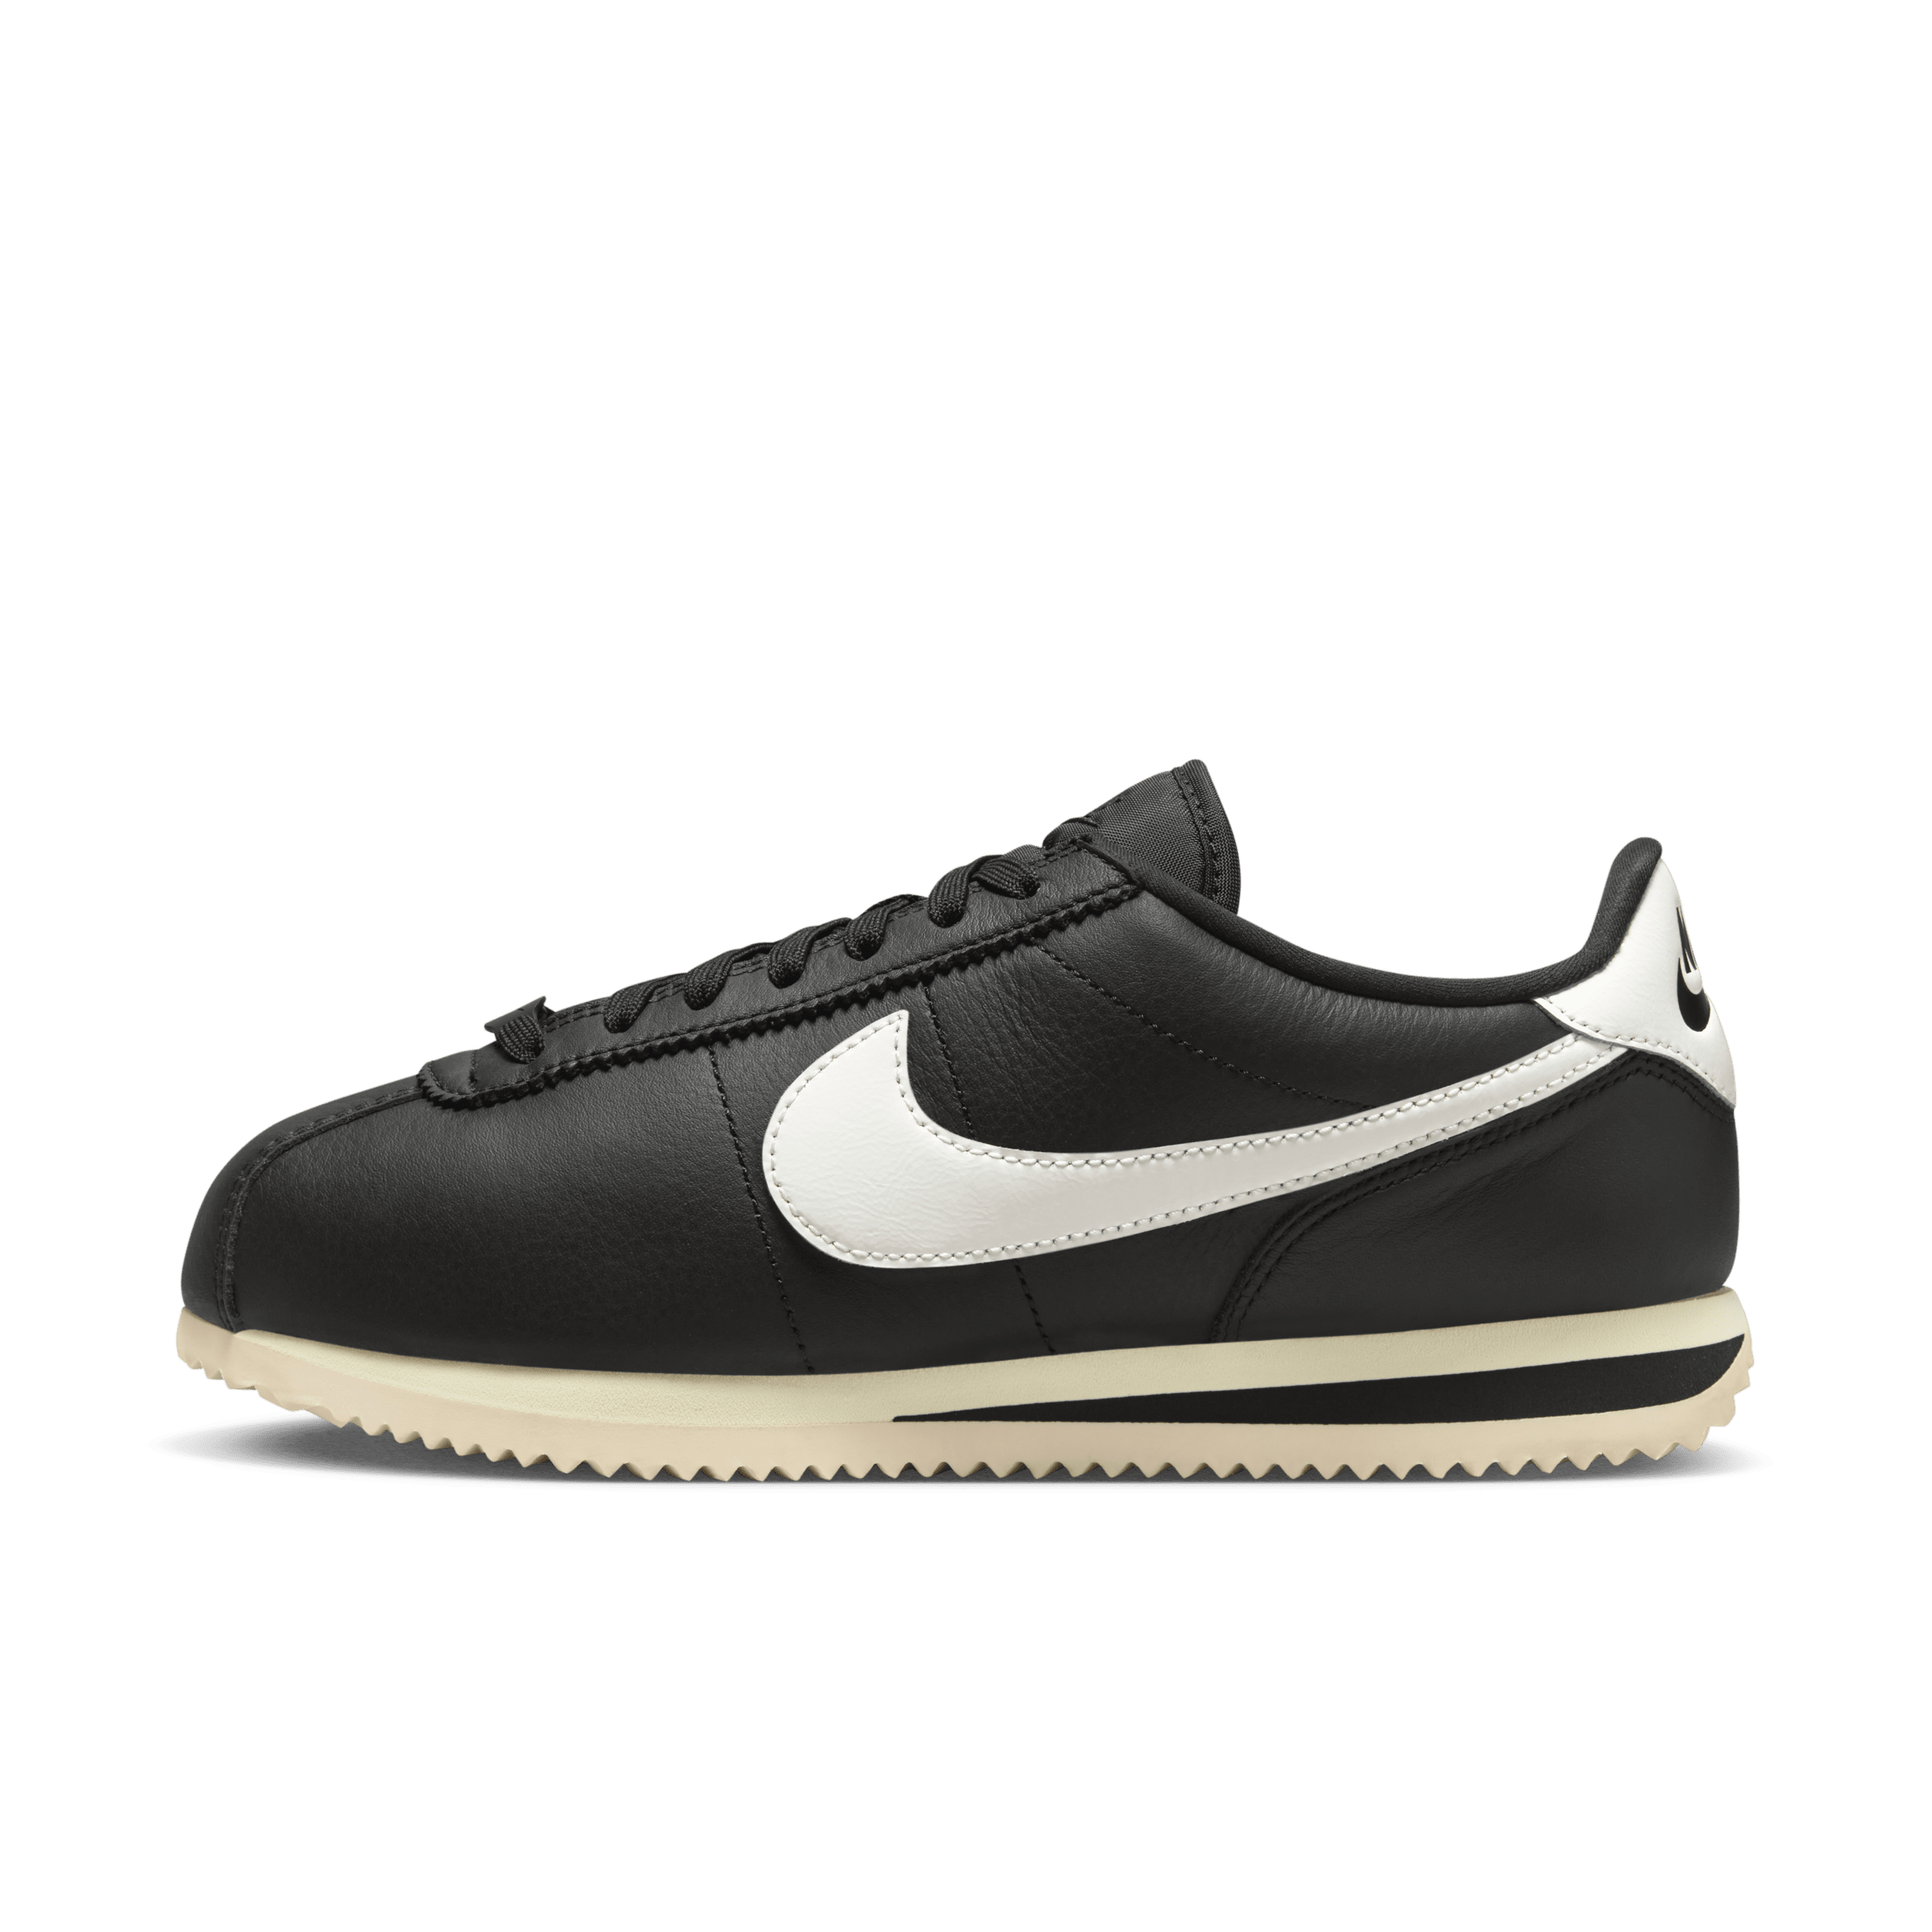 Nike Cortez 23 Premium Leather Zapatillas - Mujer - Negro